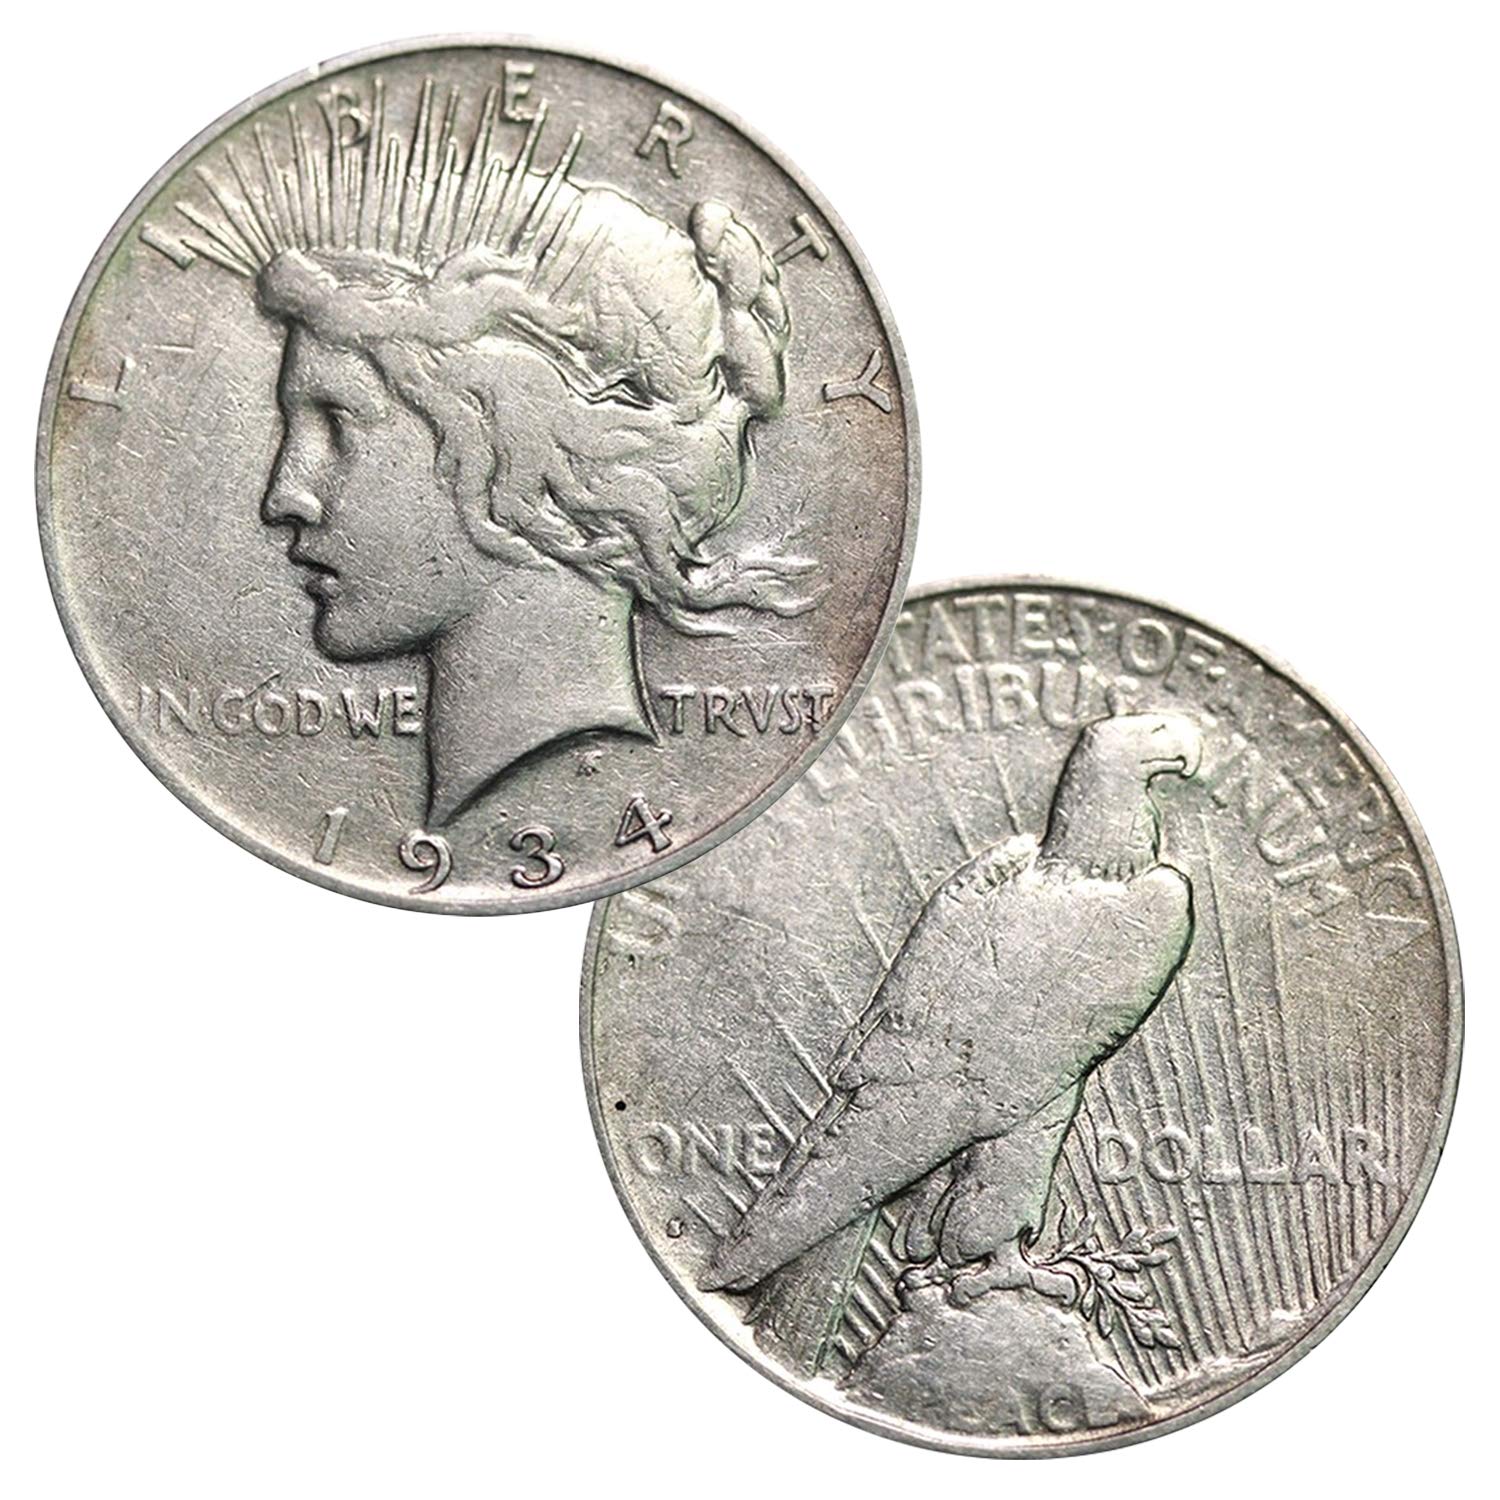 Mint mark on a Silver Peace Dollar